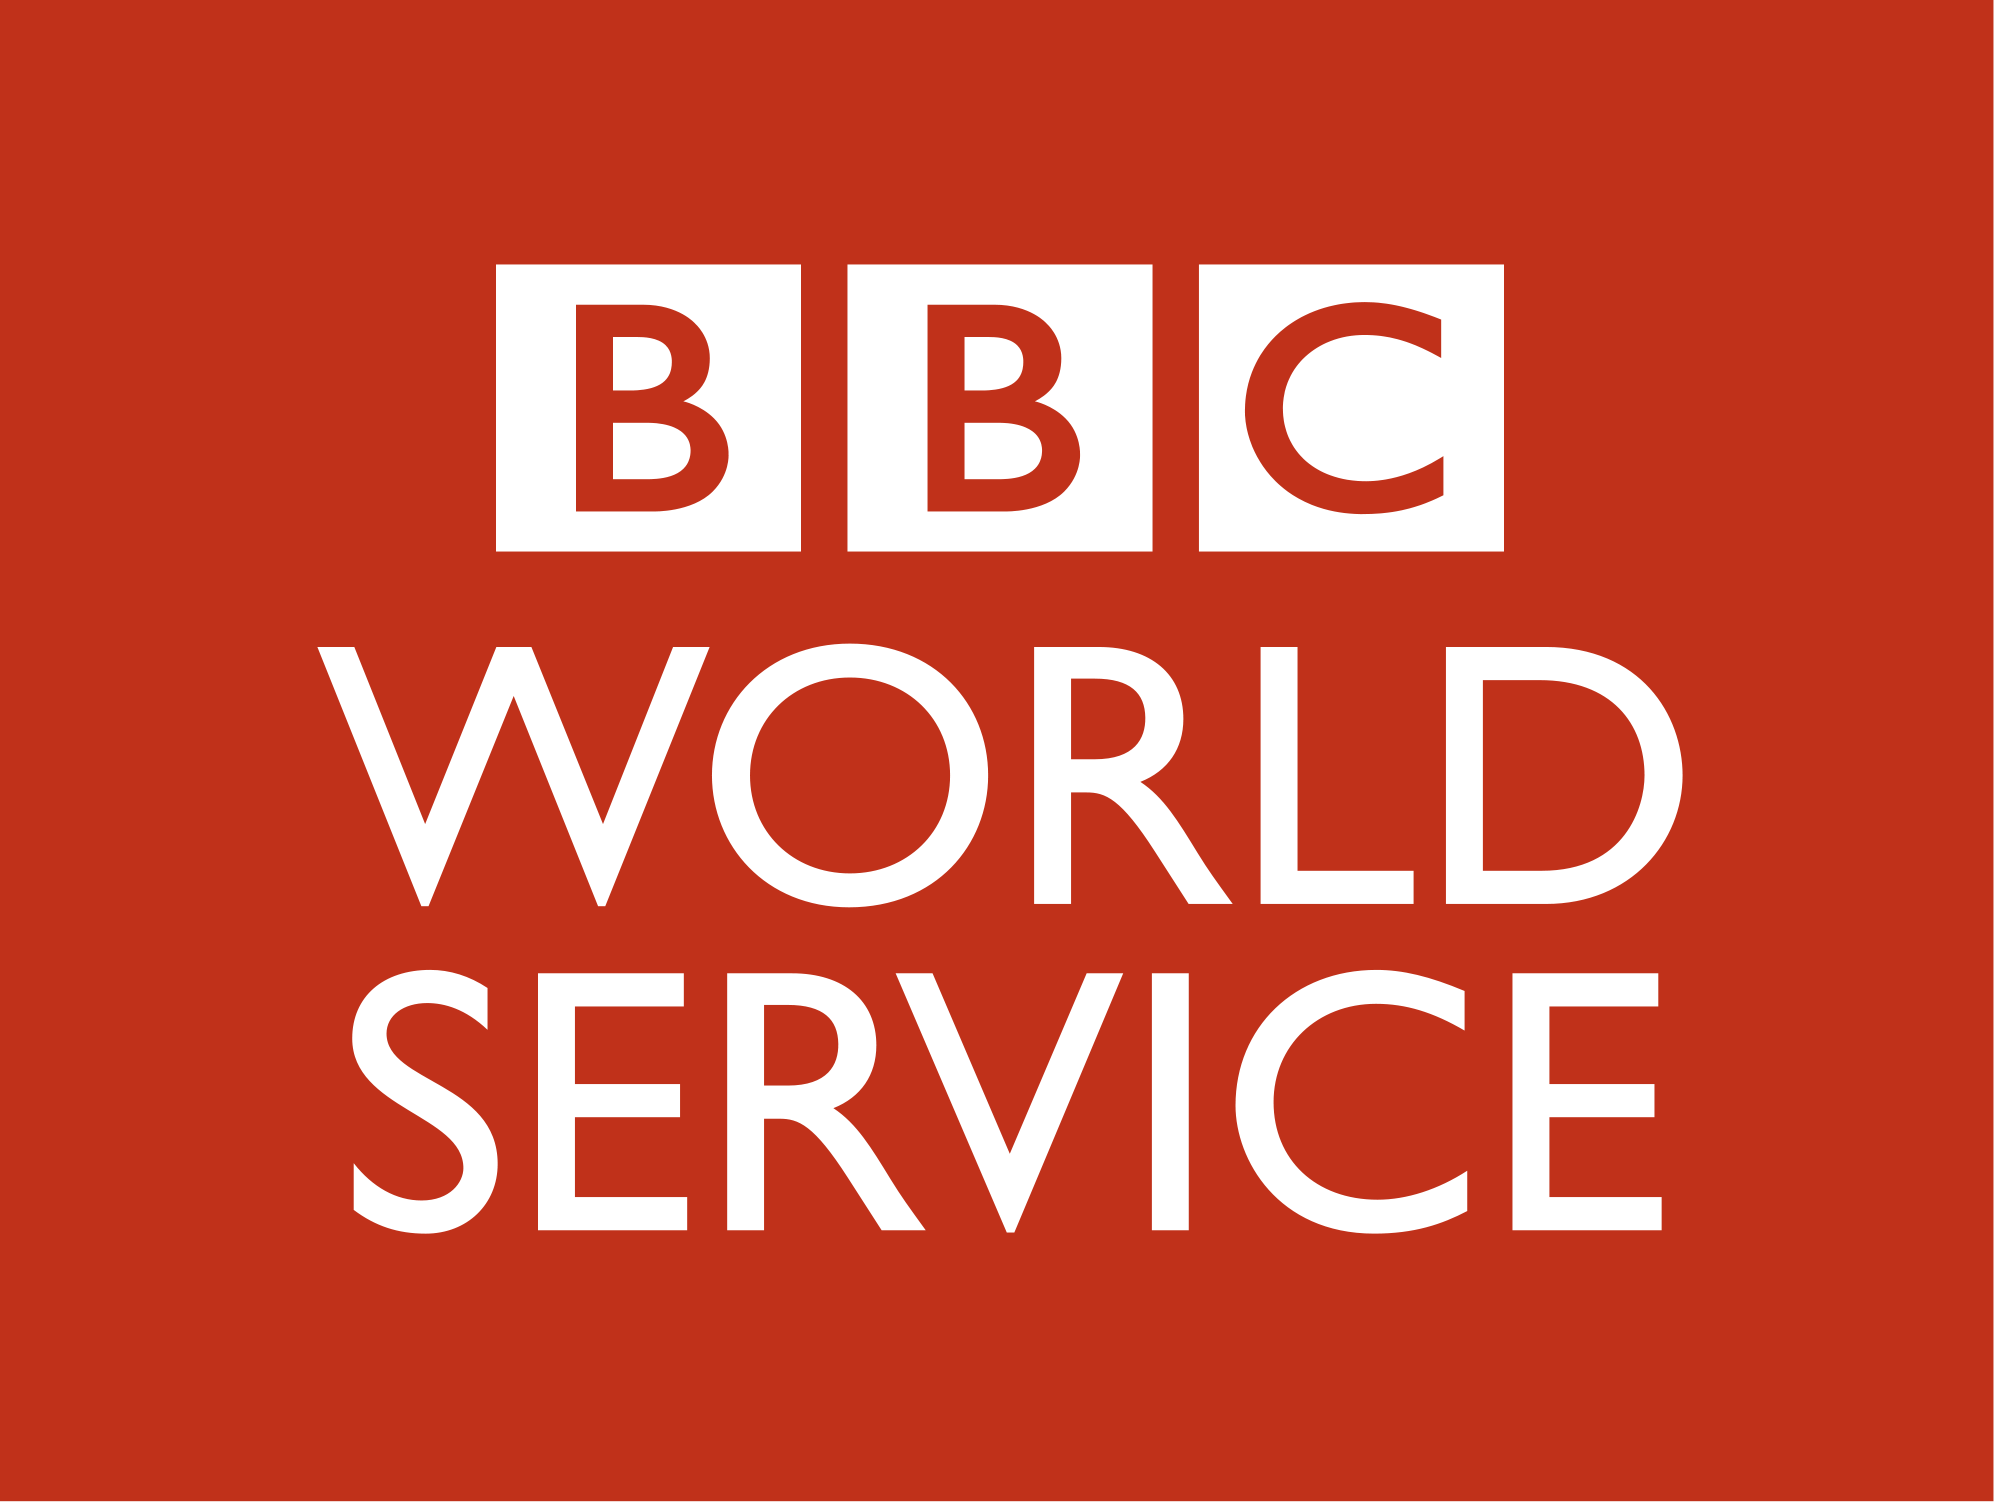 BBC World Service (March 6, 2020)